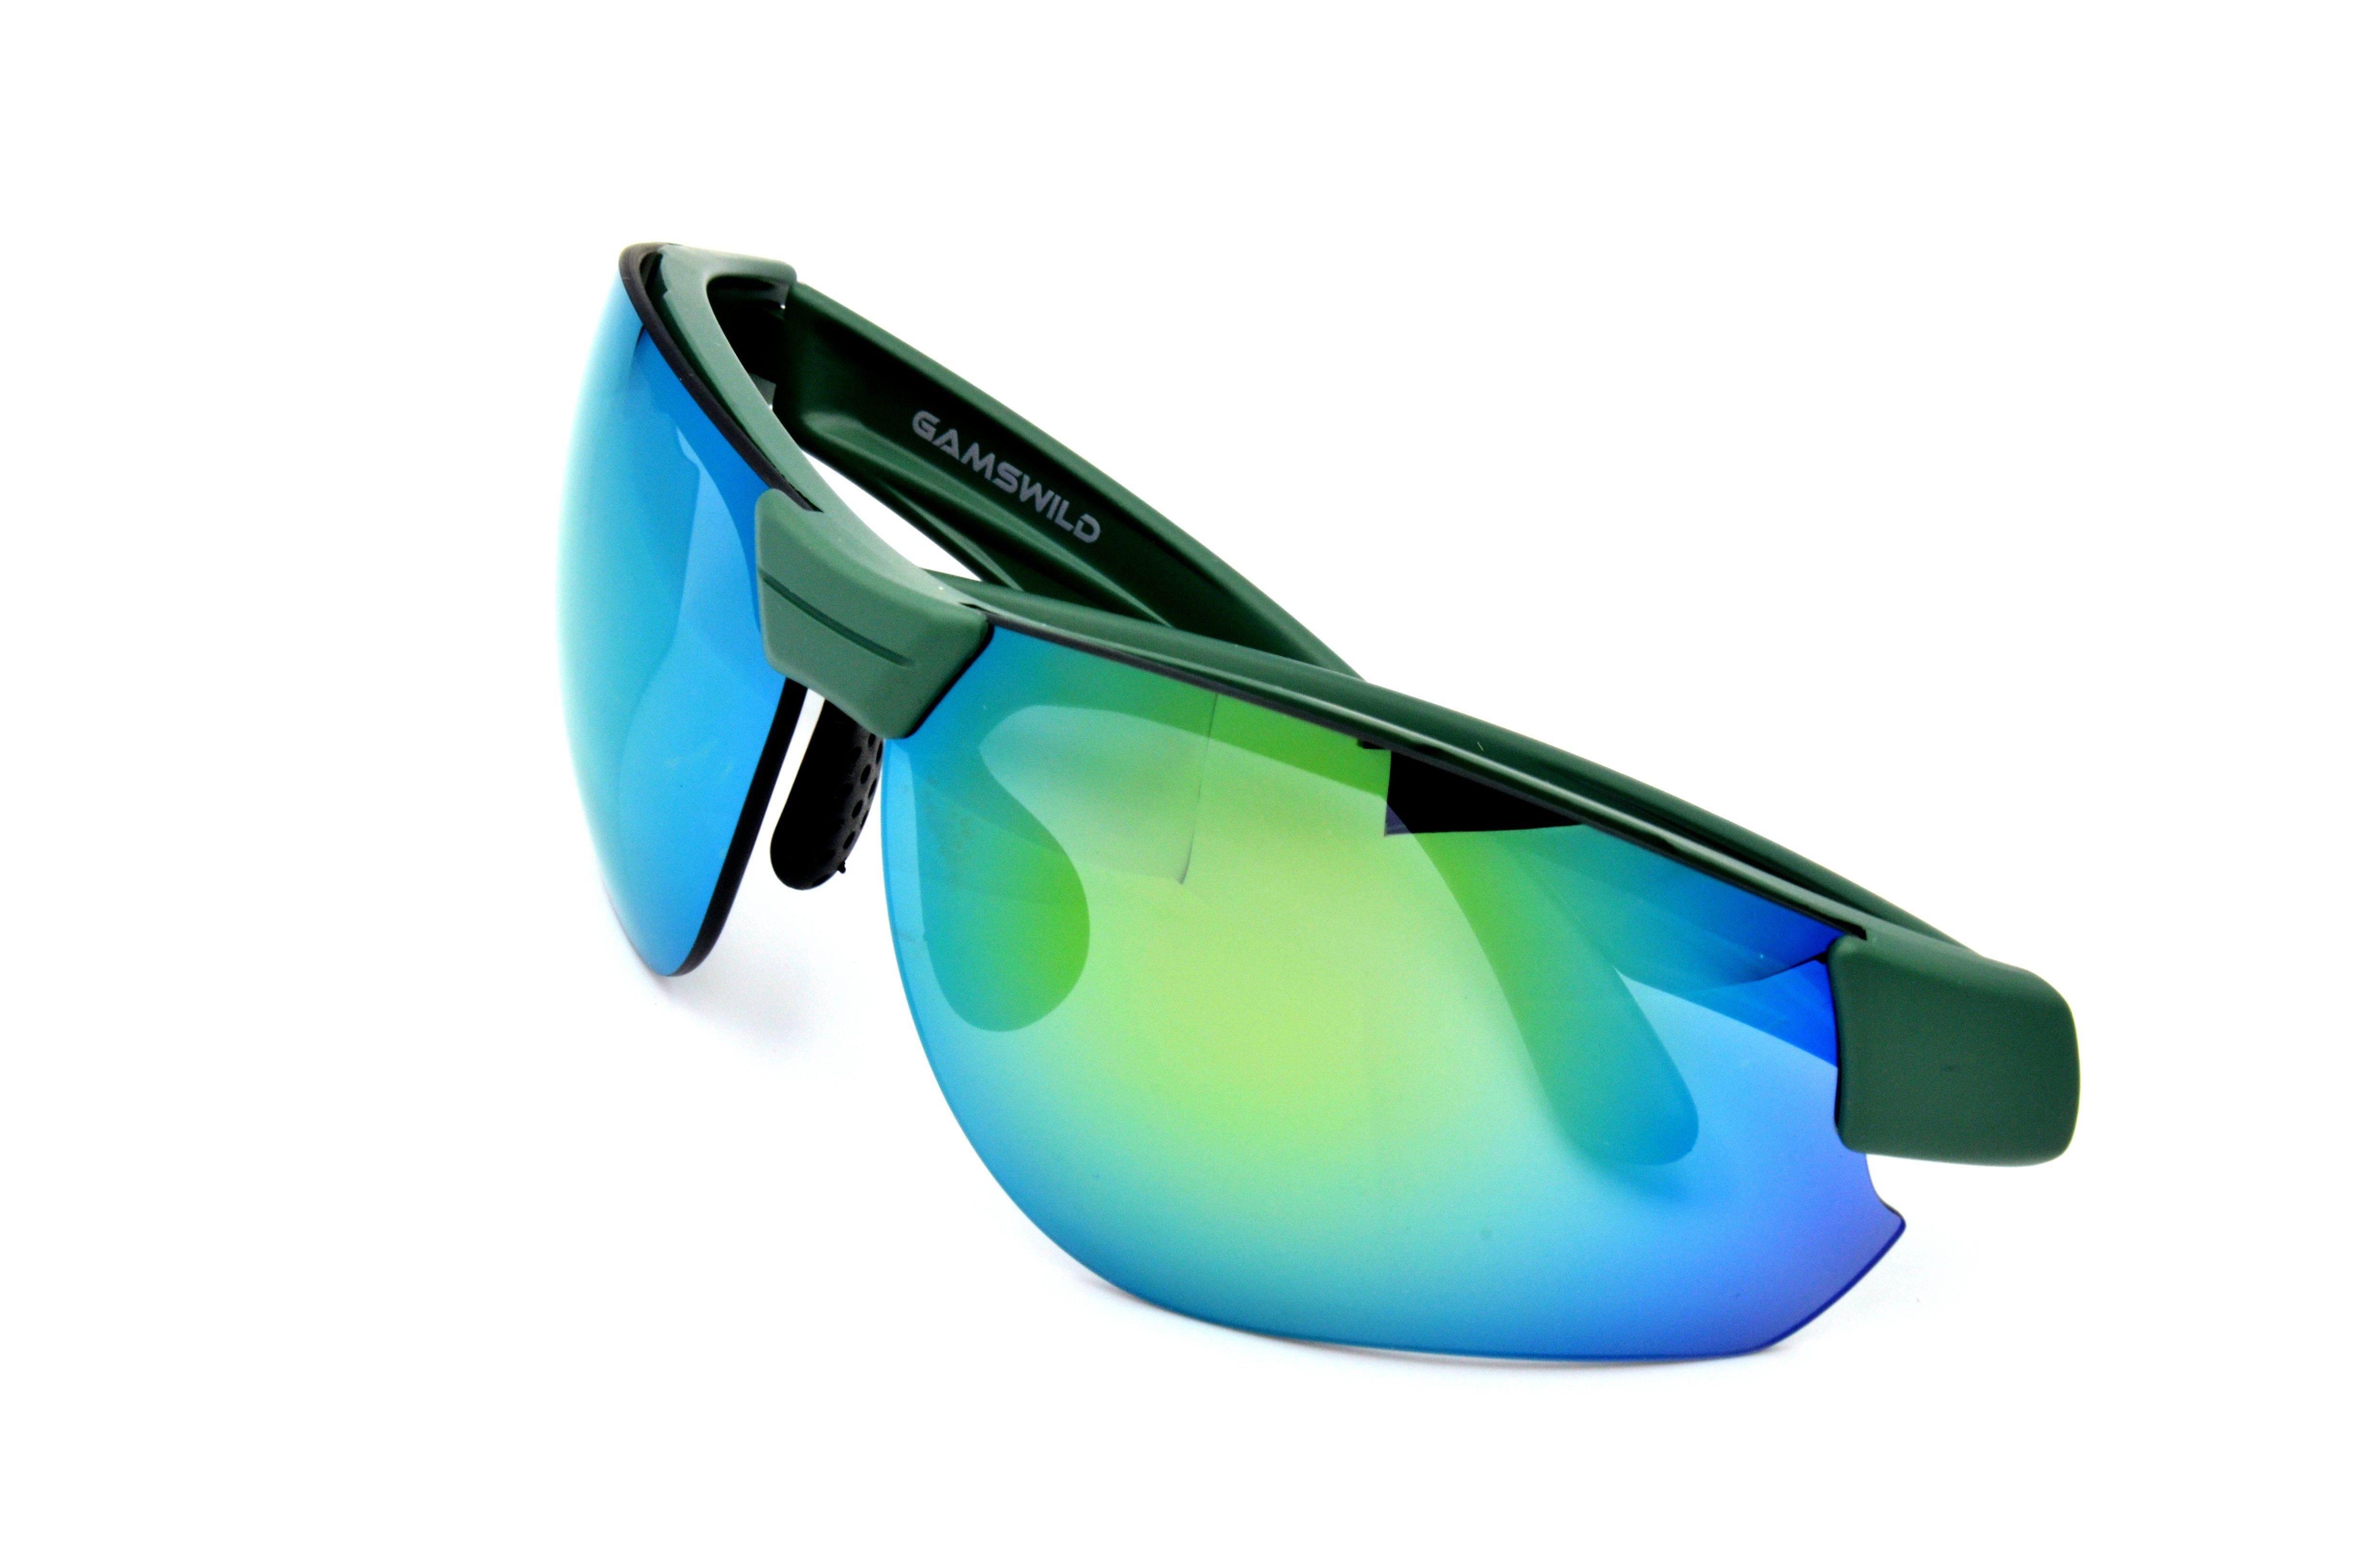 Herren weiß, Halbrahmenbrille Damen Skibrille Sonnenbrille blau, grün, Unisex, Sportbrille WS3032 Gamswild Fahrradbrille